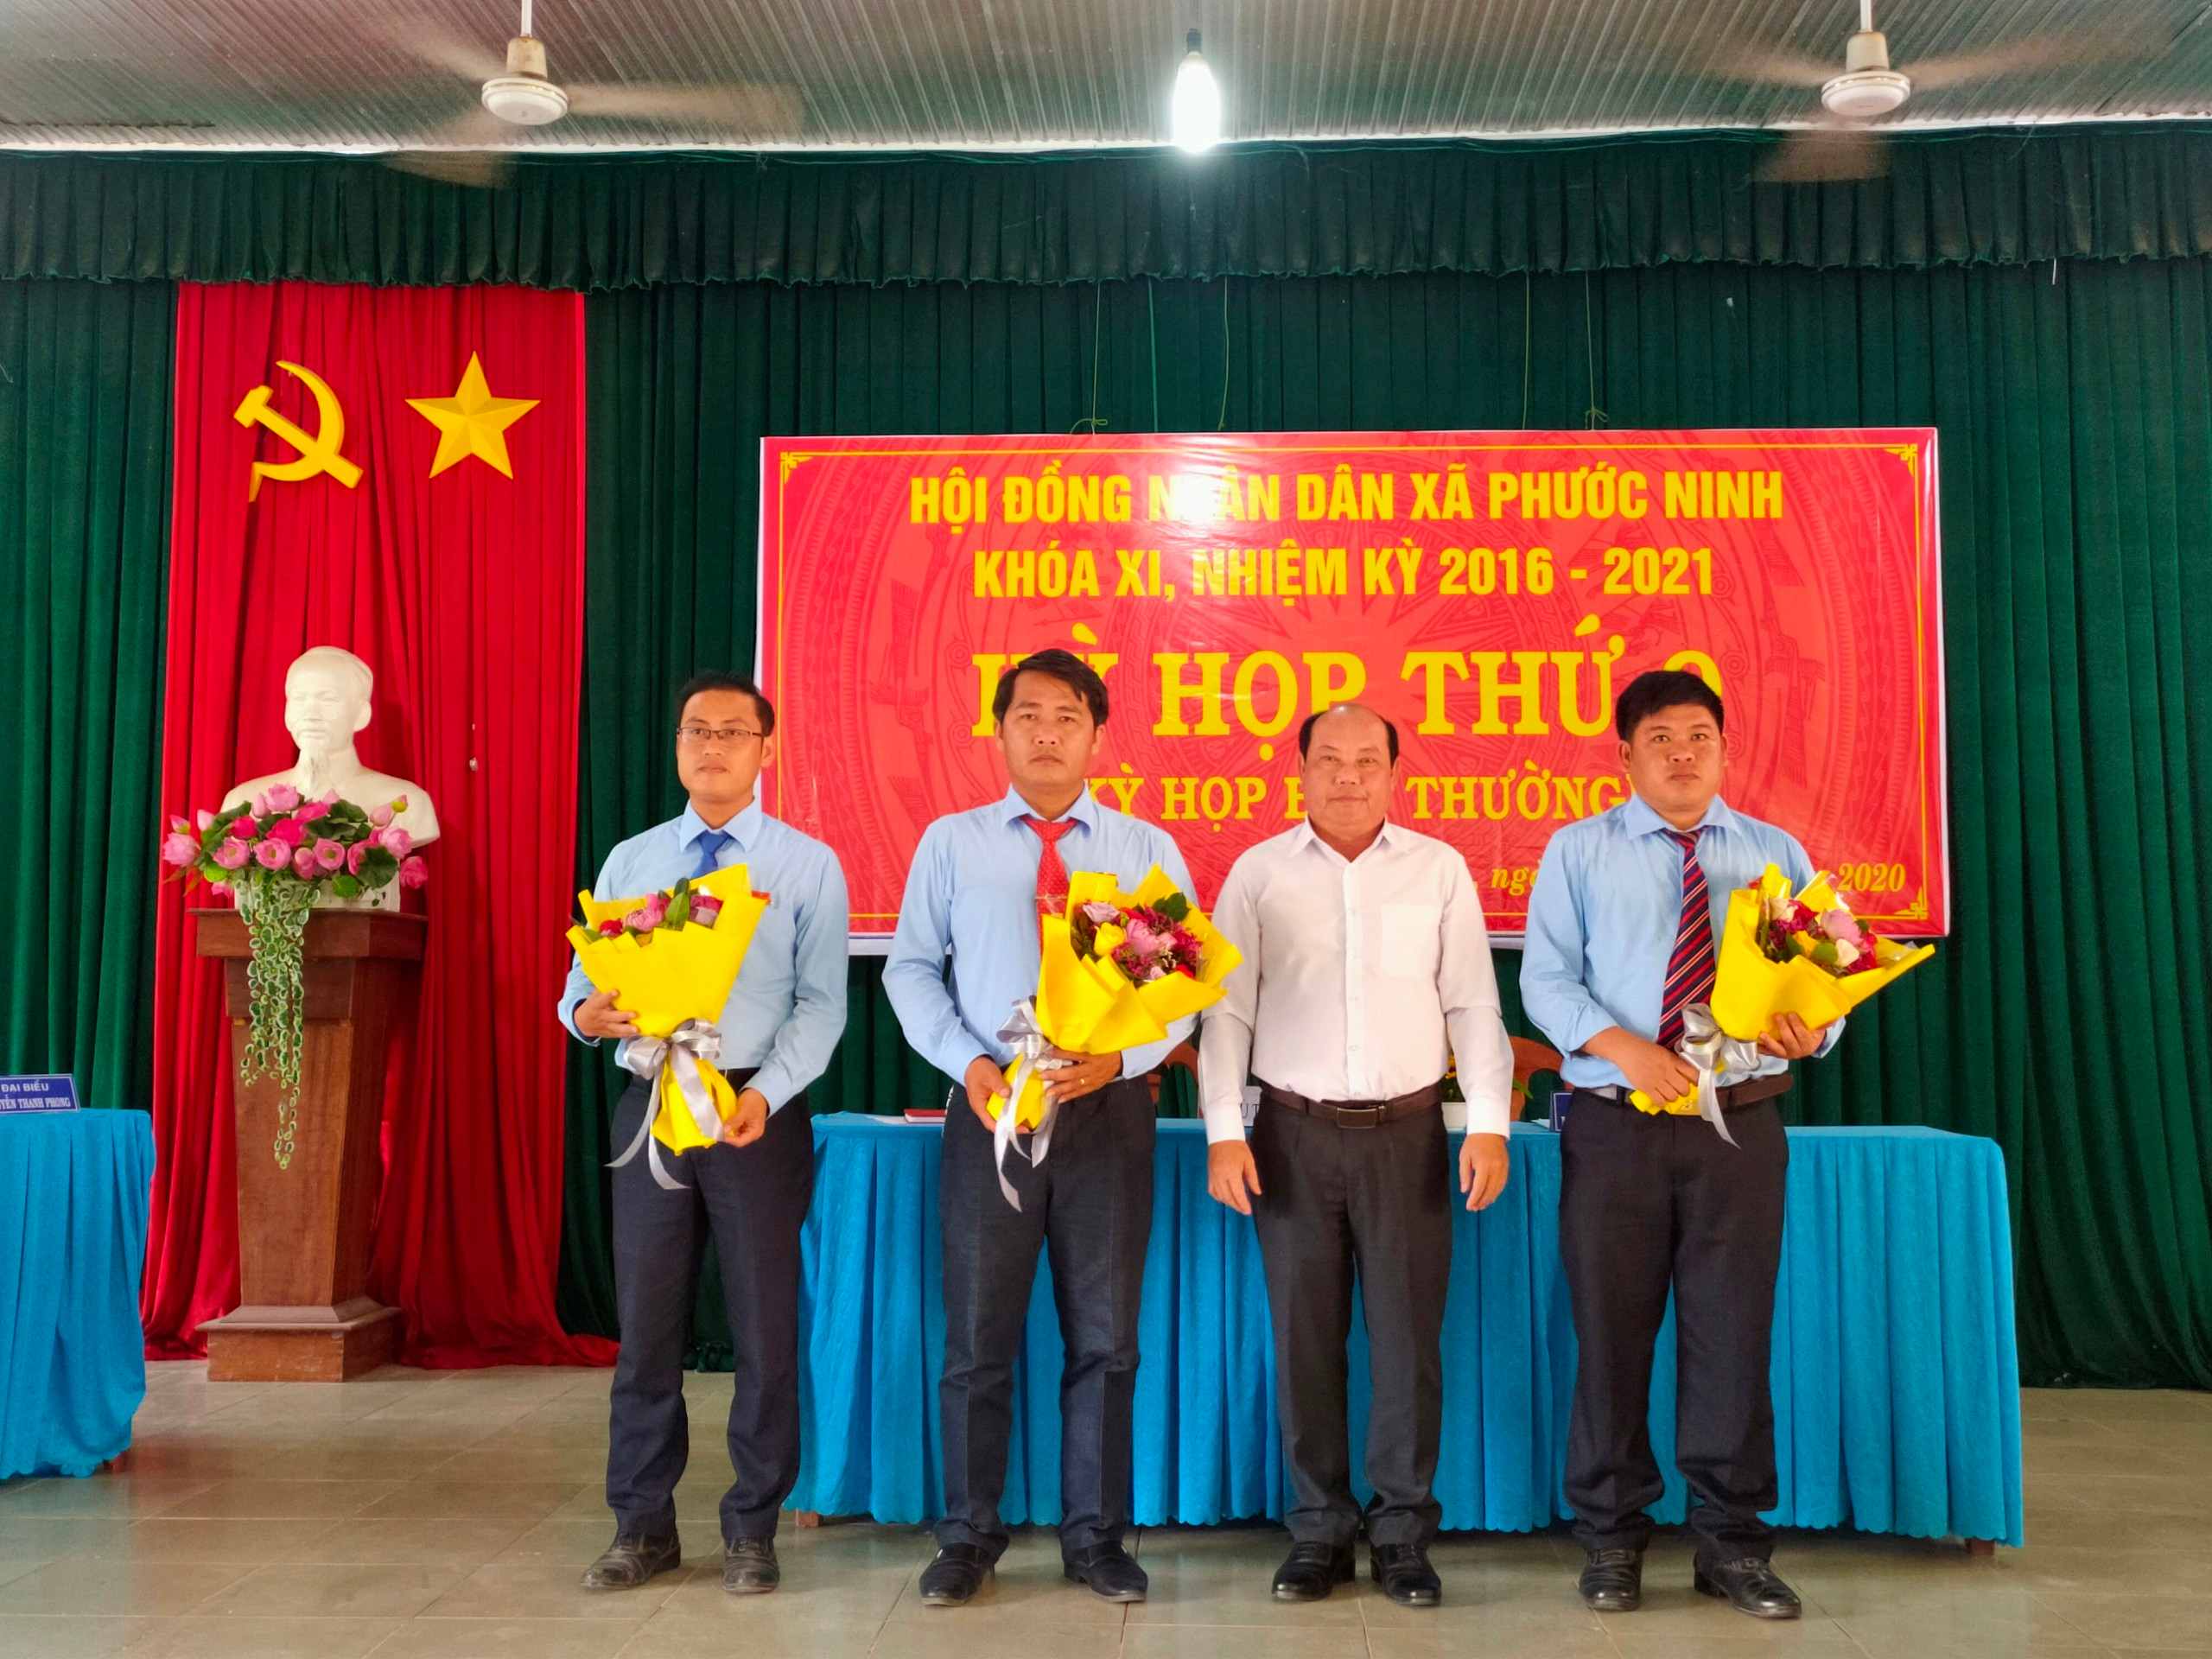 Hội đồng nhân dân xã Phước Ninh huyện Dương Minh Châu tổ chức kỳ họp thứ 9 (kỳ họp bất thường) HĐND xã khóa XI nhiệm kỳ 2016- 2021